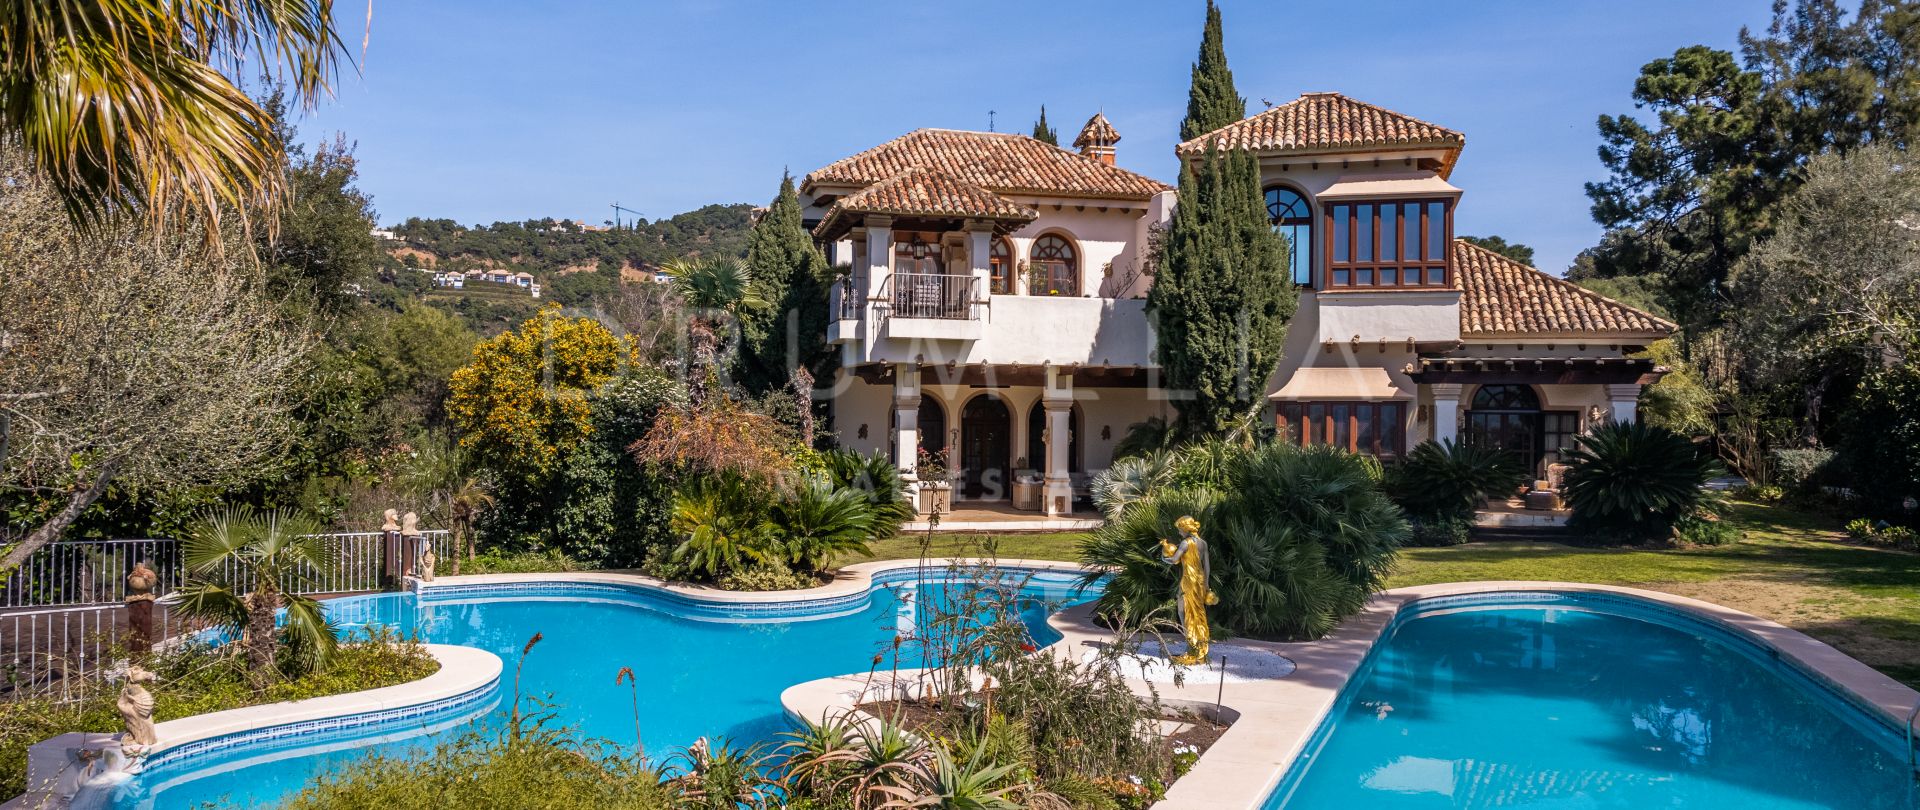 Magnificent classic-style Mediterranean villa for sale in fabulous La Zagaleta, Benahavis